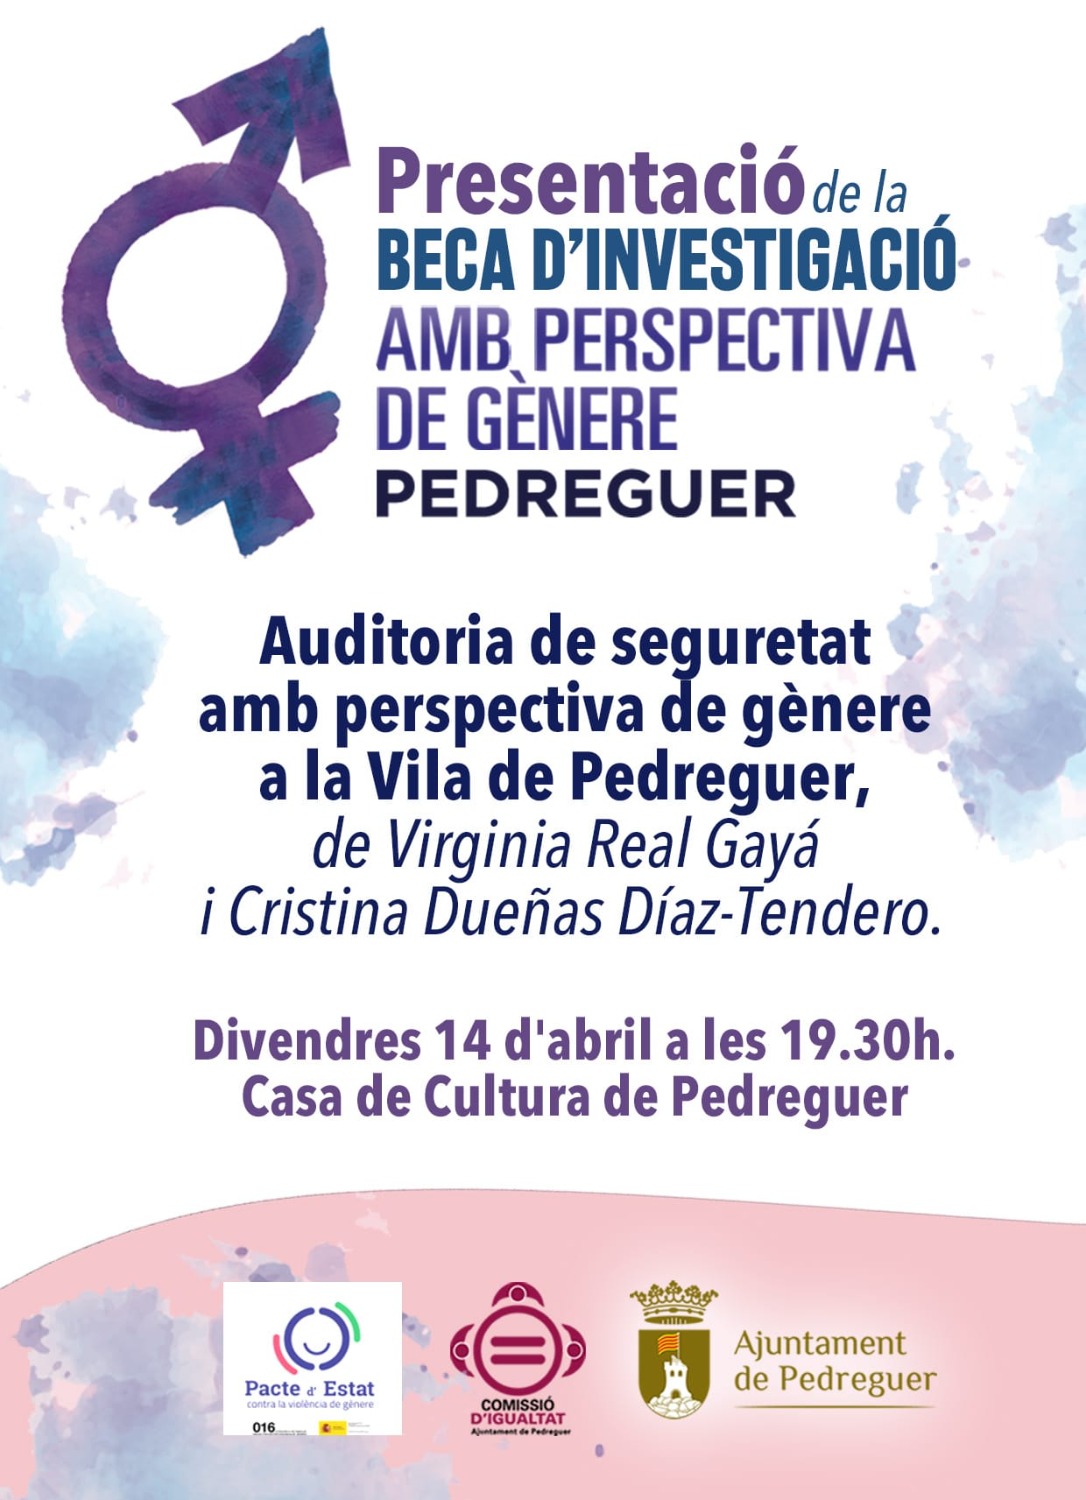 Pedreguer presenta la tercera edición de los premios de investigación con perspectiva de género